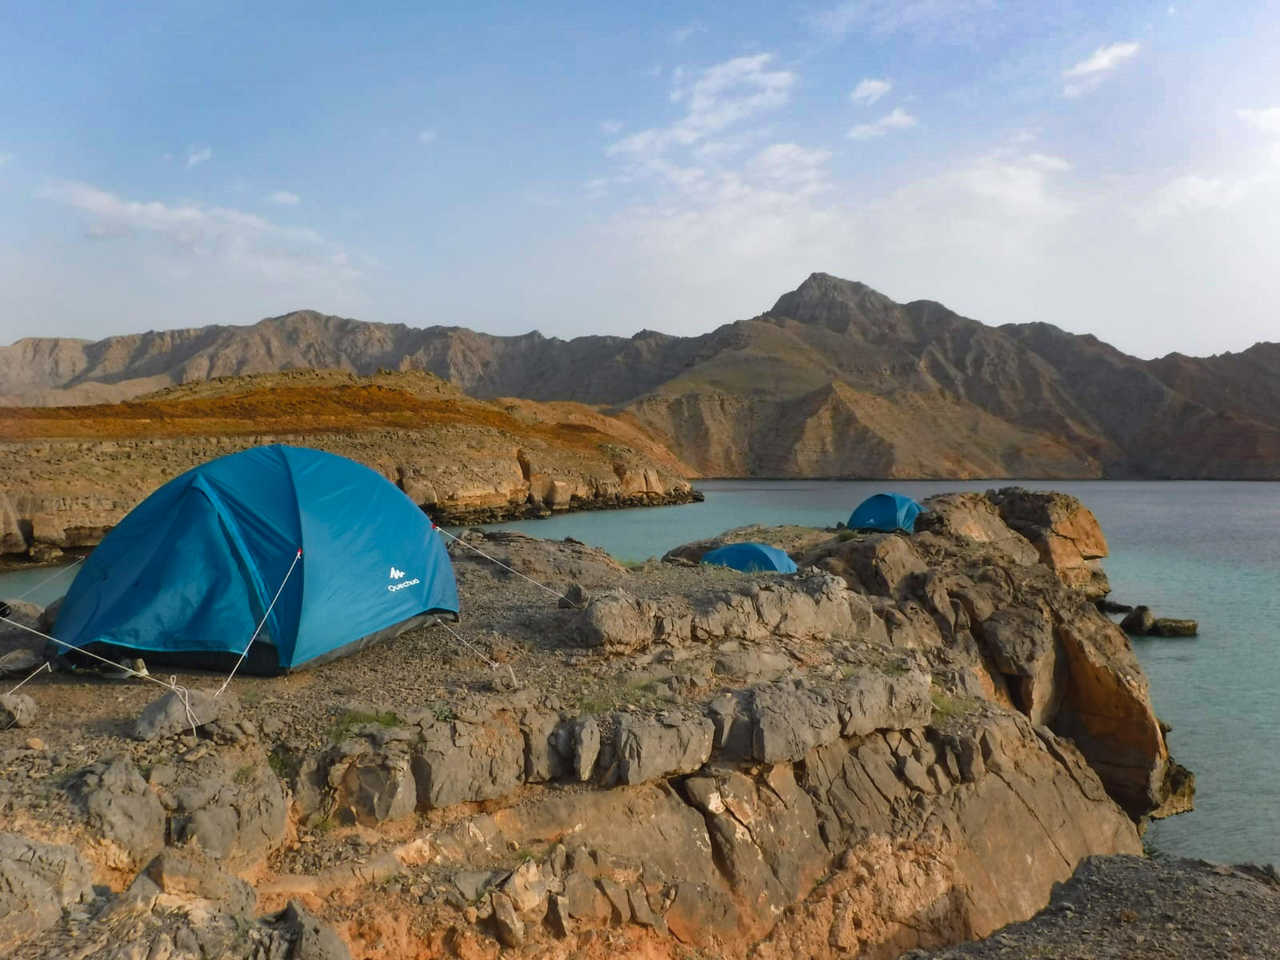 Camp et tentes au bord de la mer en baie de Sham à Oman